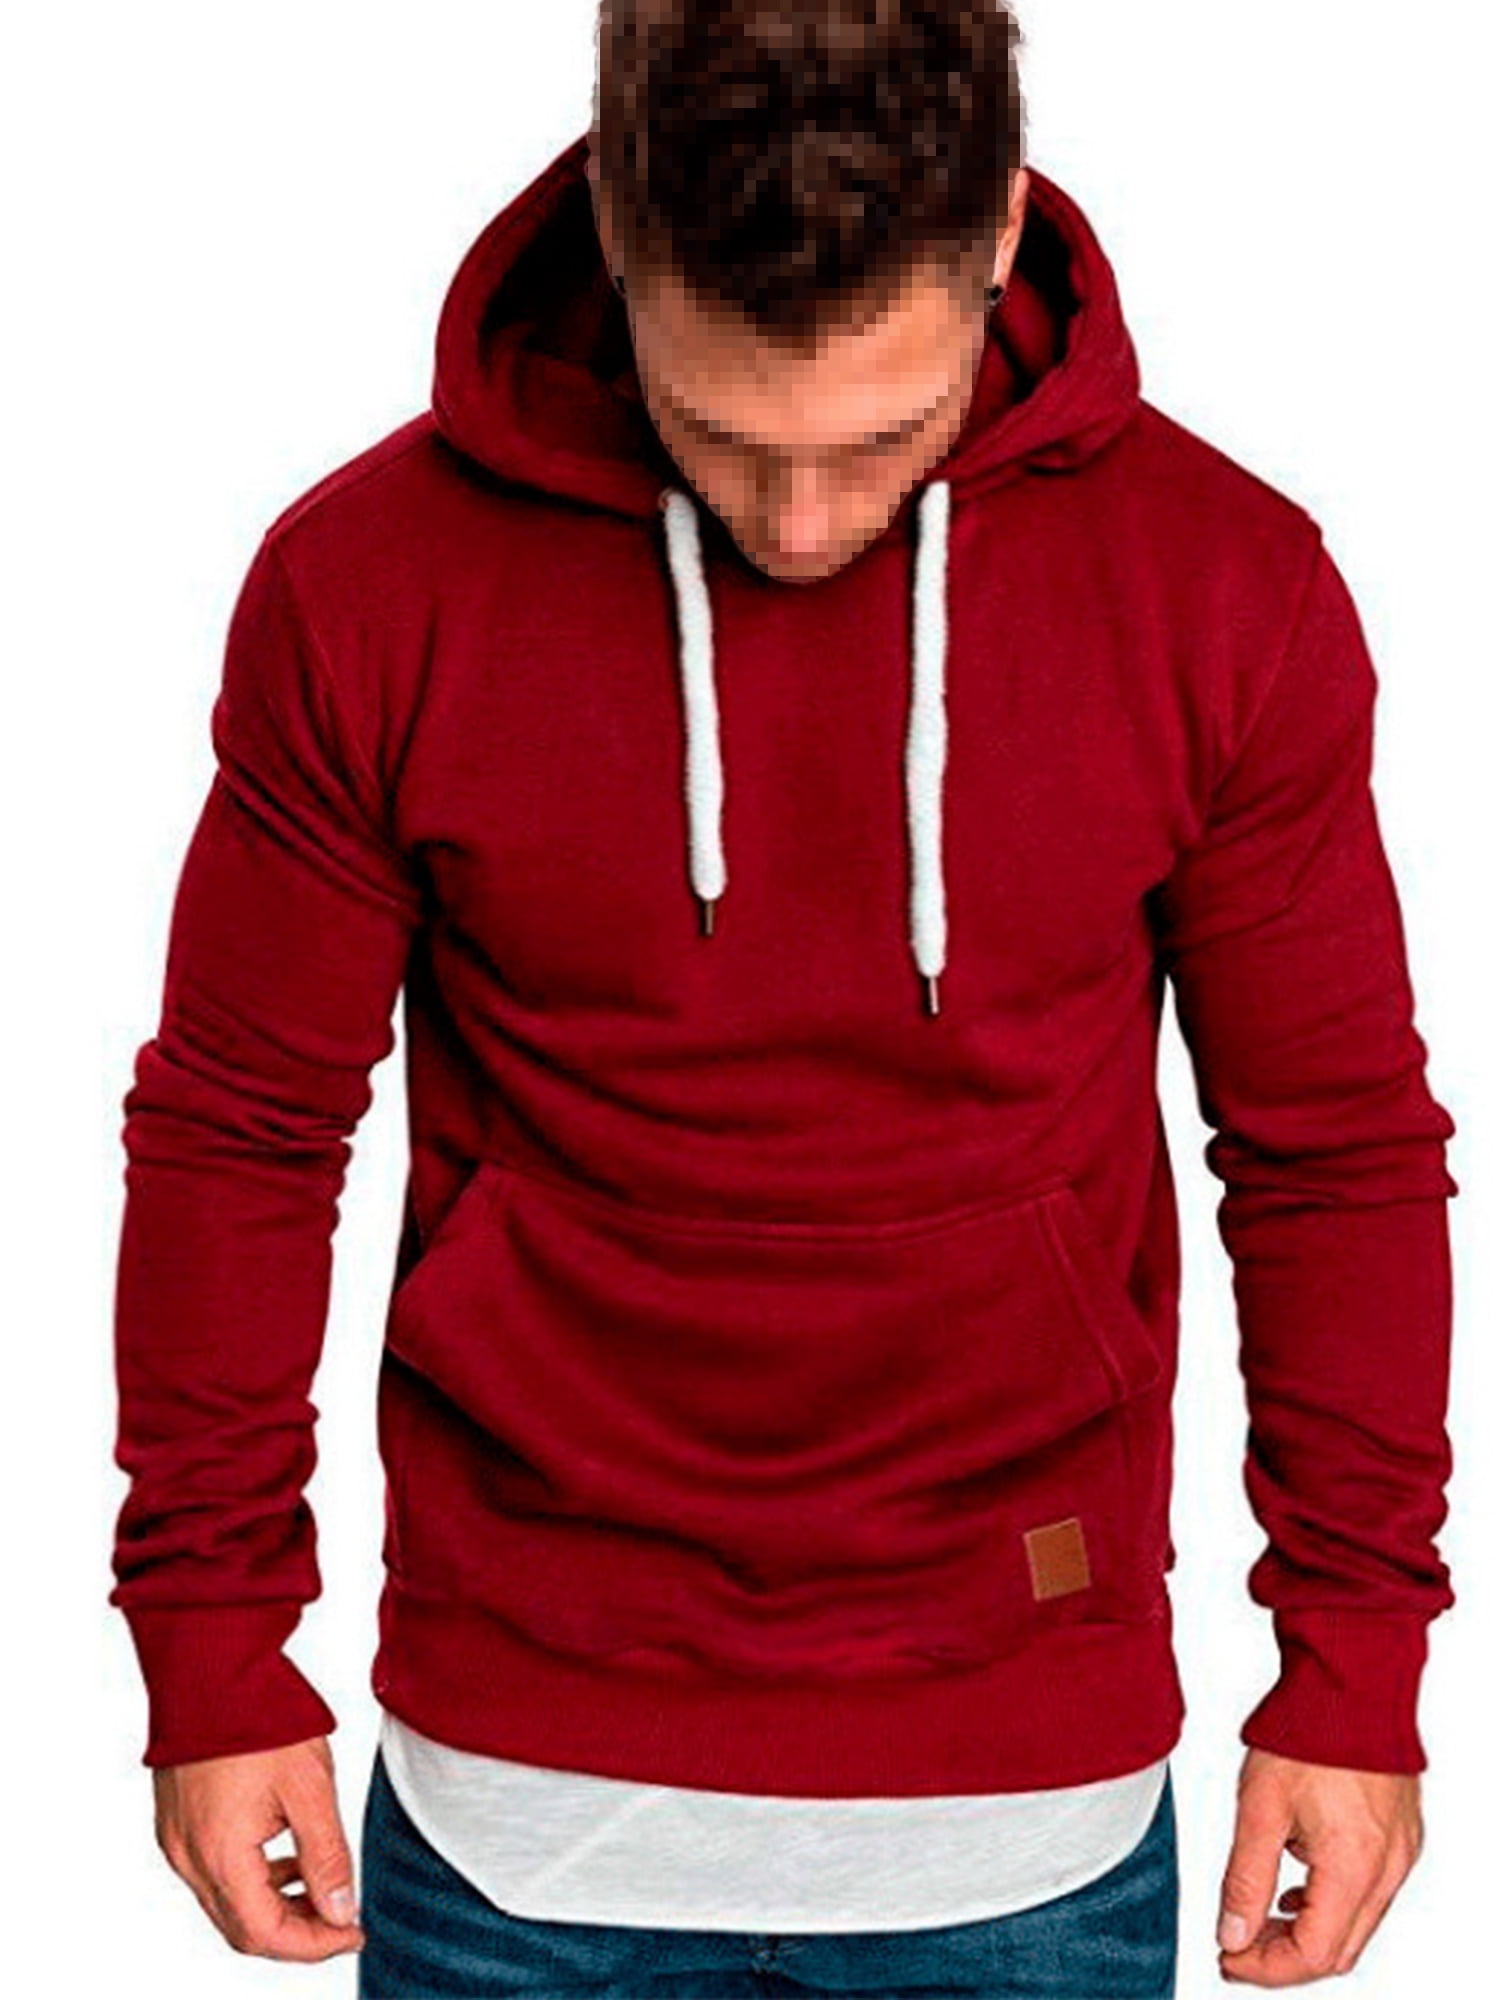 Men's Hoodies Pullover Hooded Sweatshirt Top Blouse Casual Hoody with Pocket